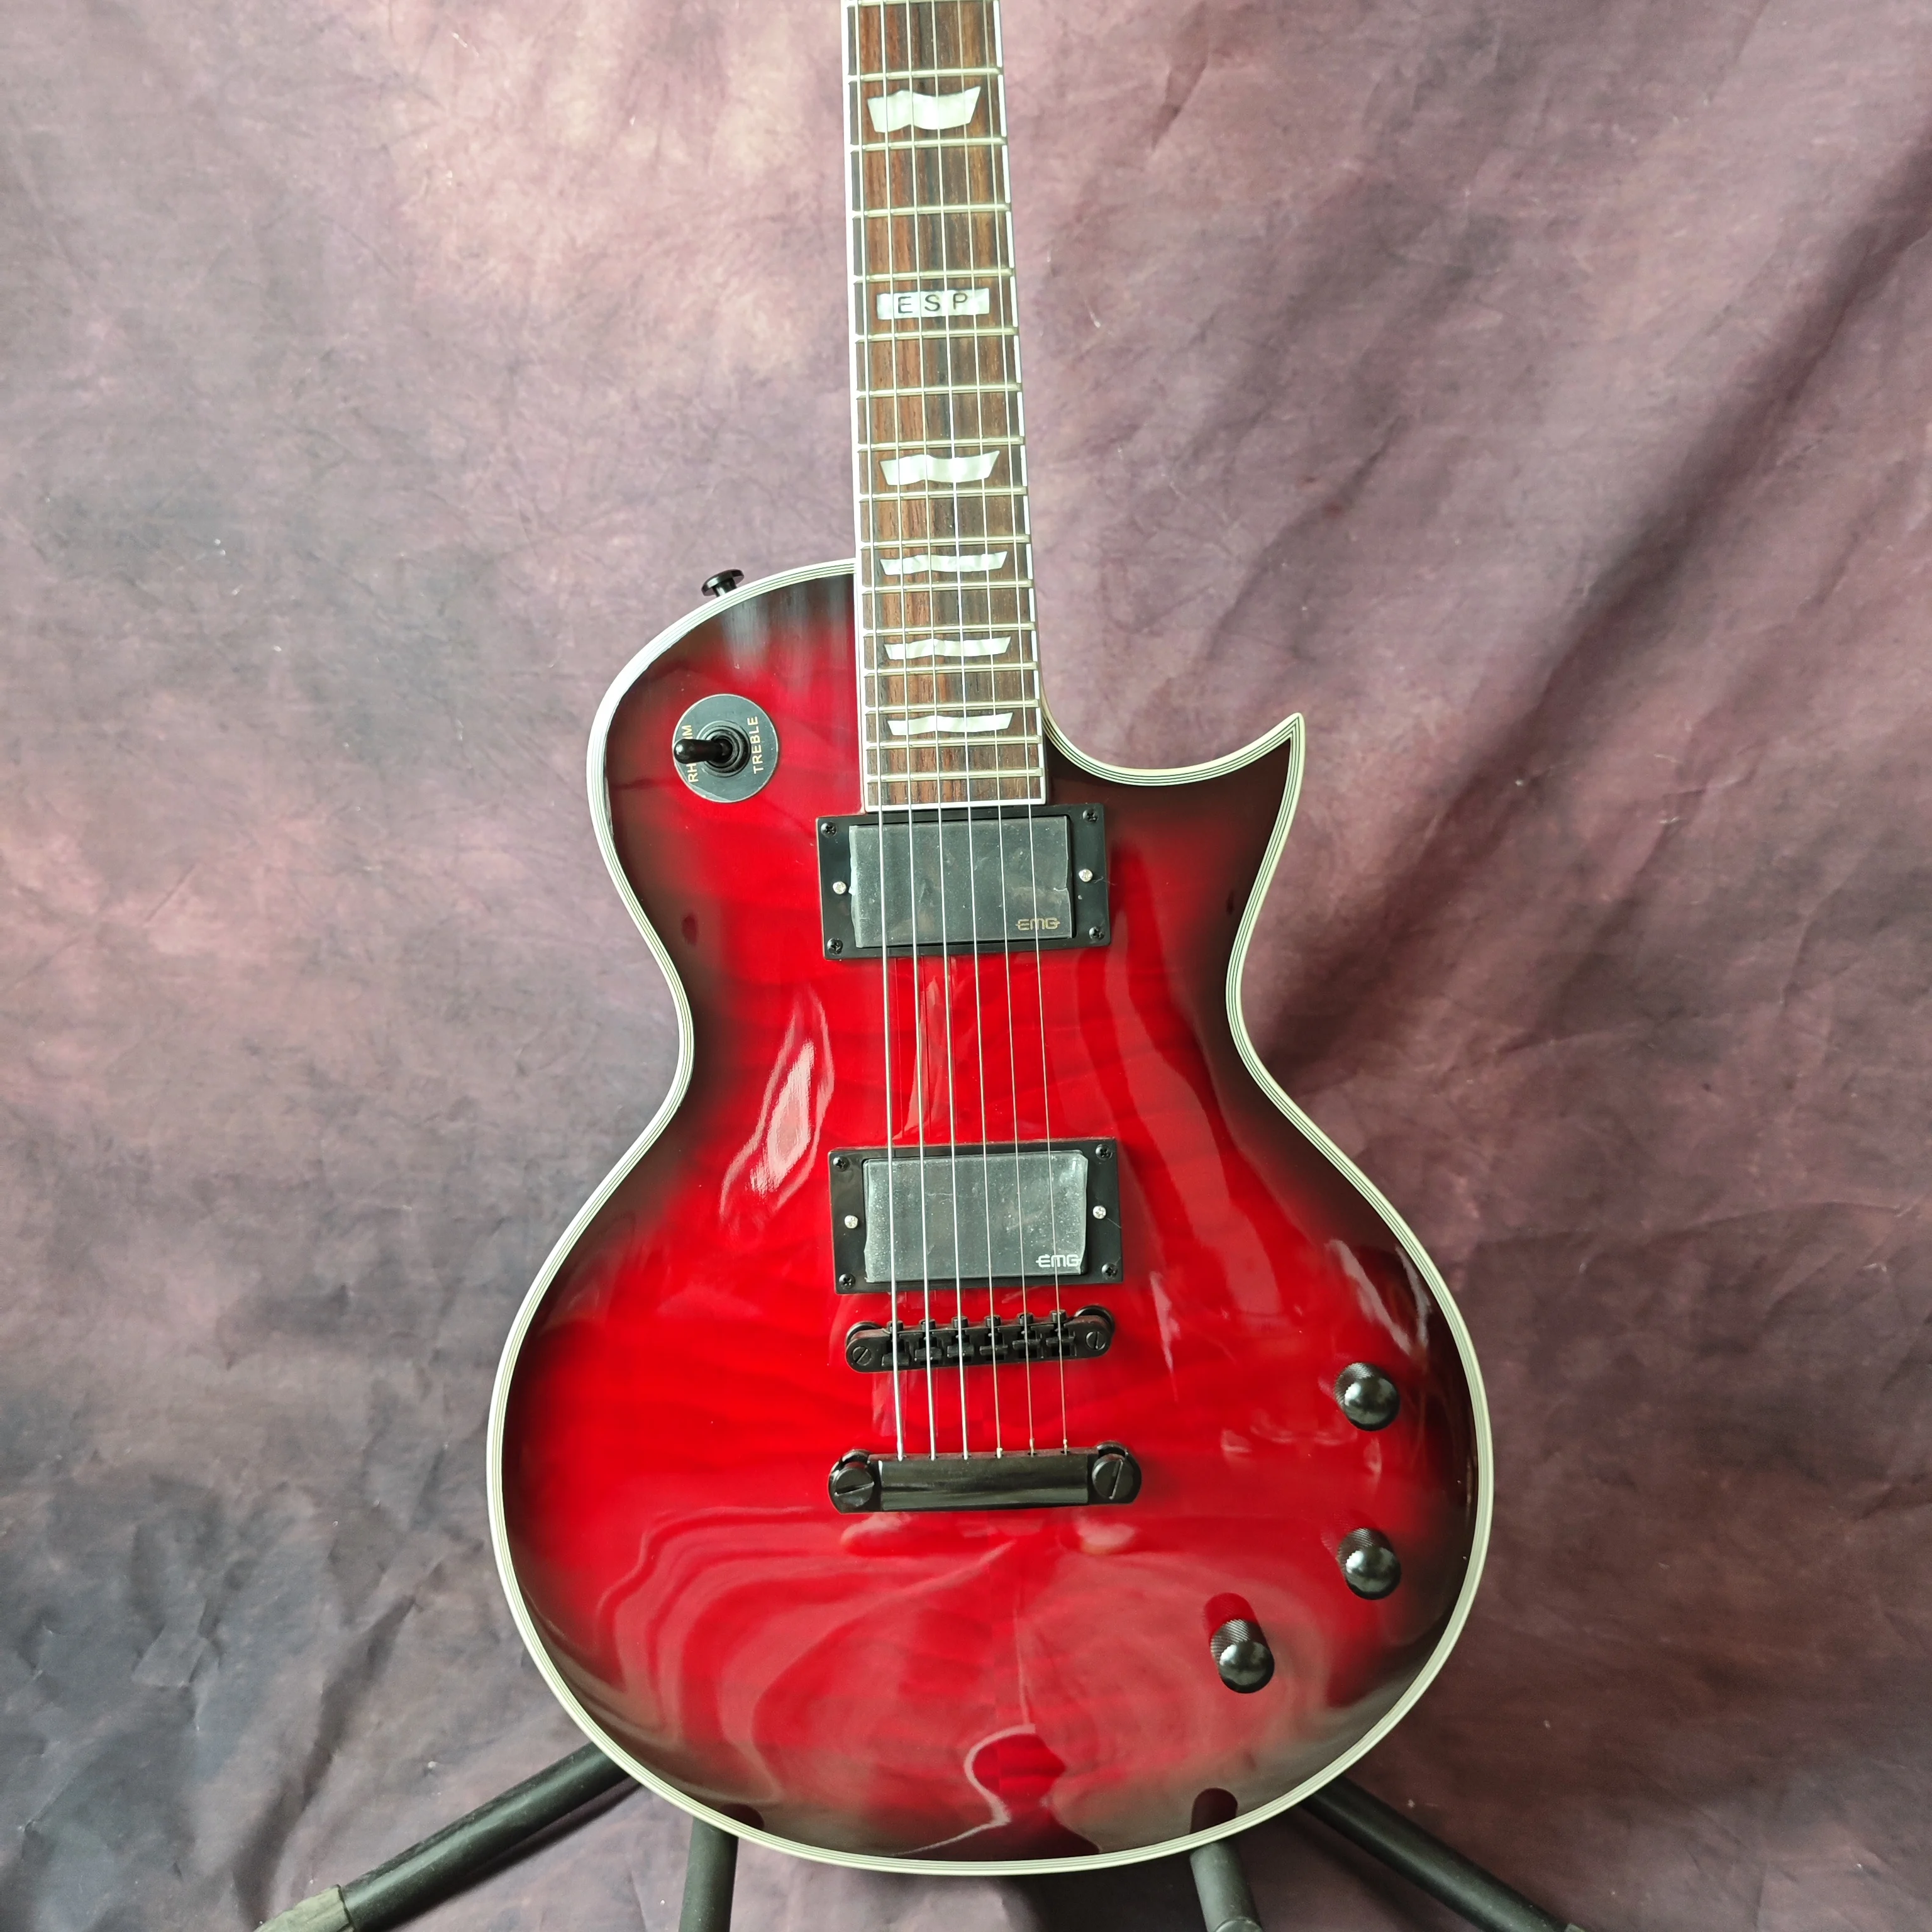 ESP vörös nagy virág elektromos gitár, bolyhos juhar top, barackvirág fa test, rózsa fa fingerboard, testreszabott gyári - 4